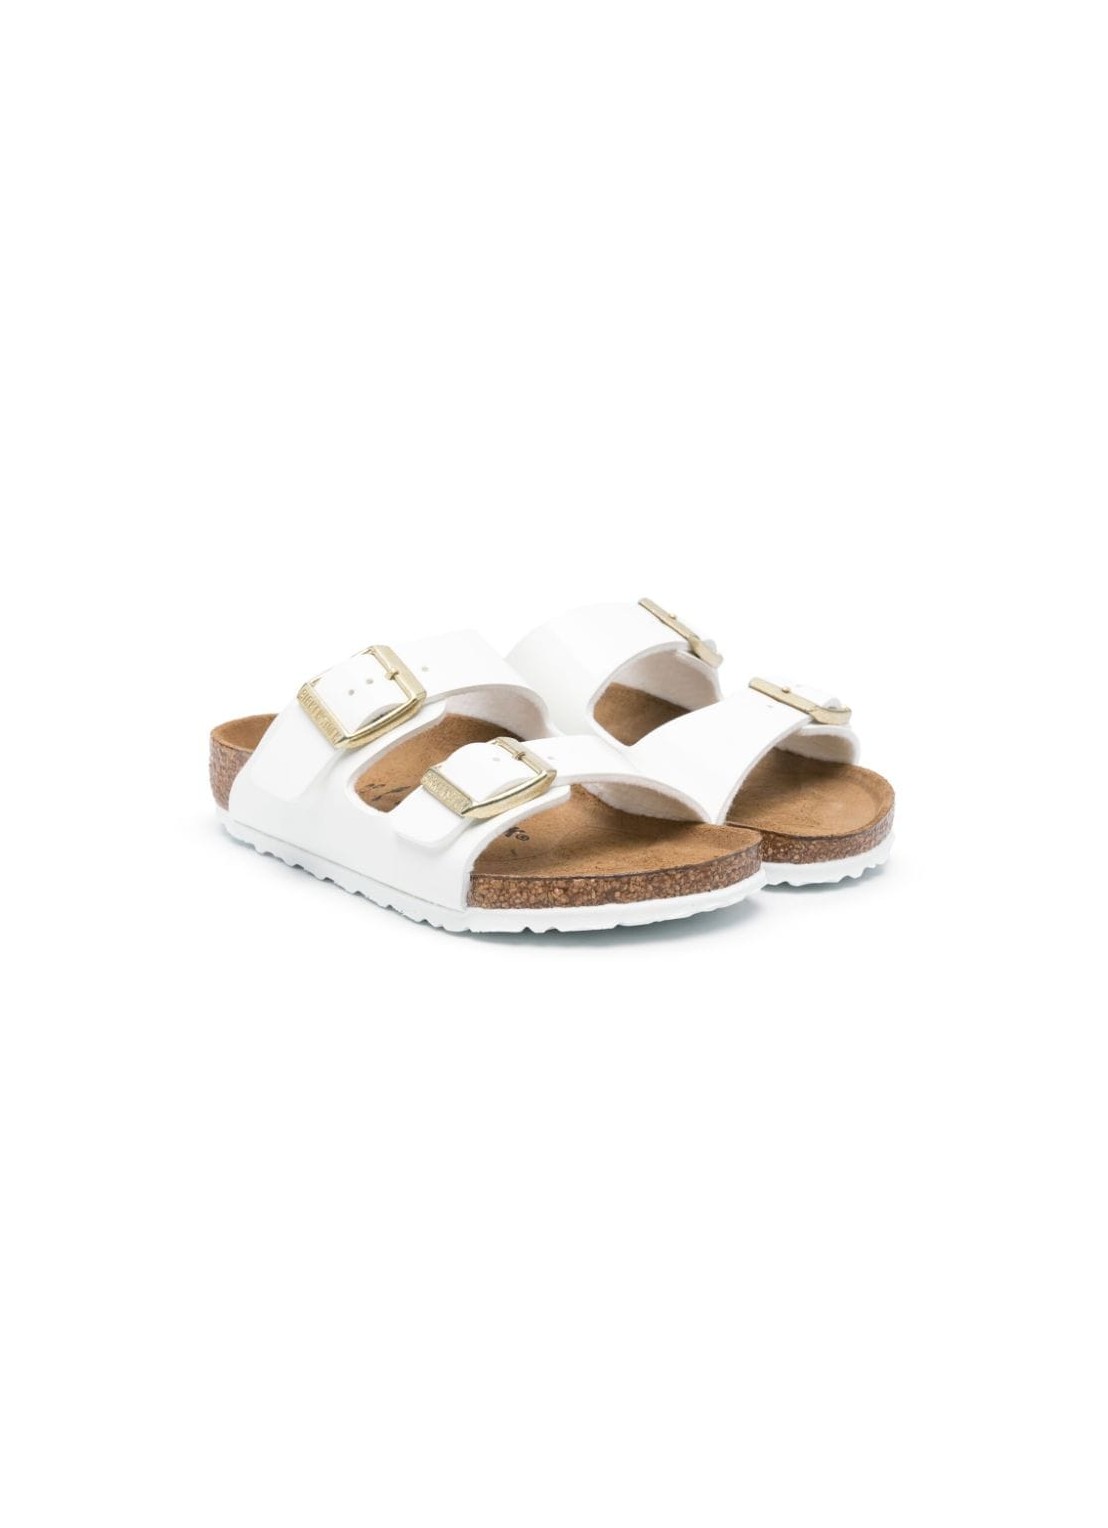 Sandalia birkenstock sandal man arizona kids bf 1027150 patent white talla 33
 